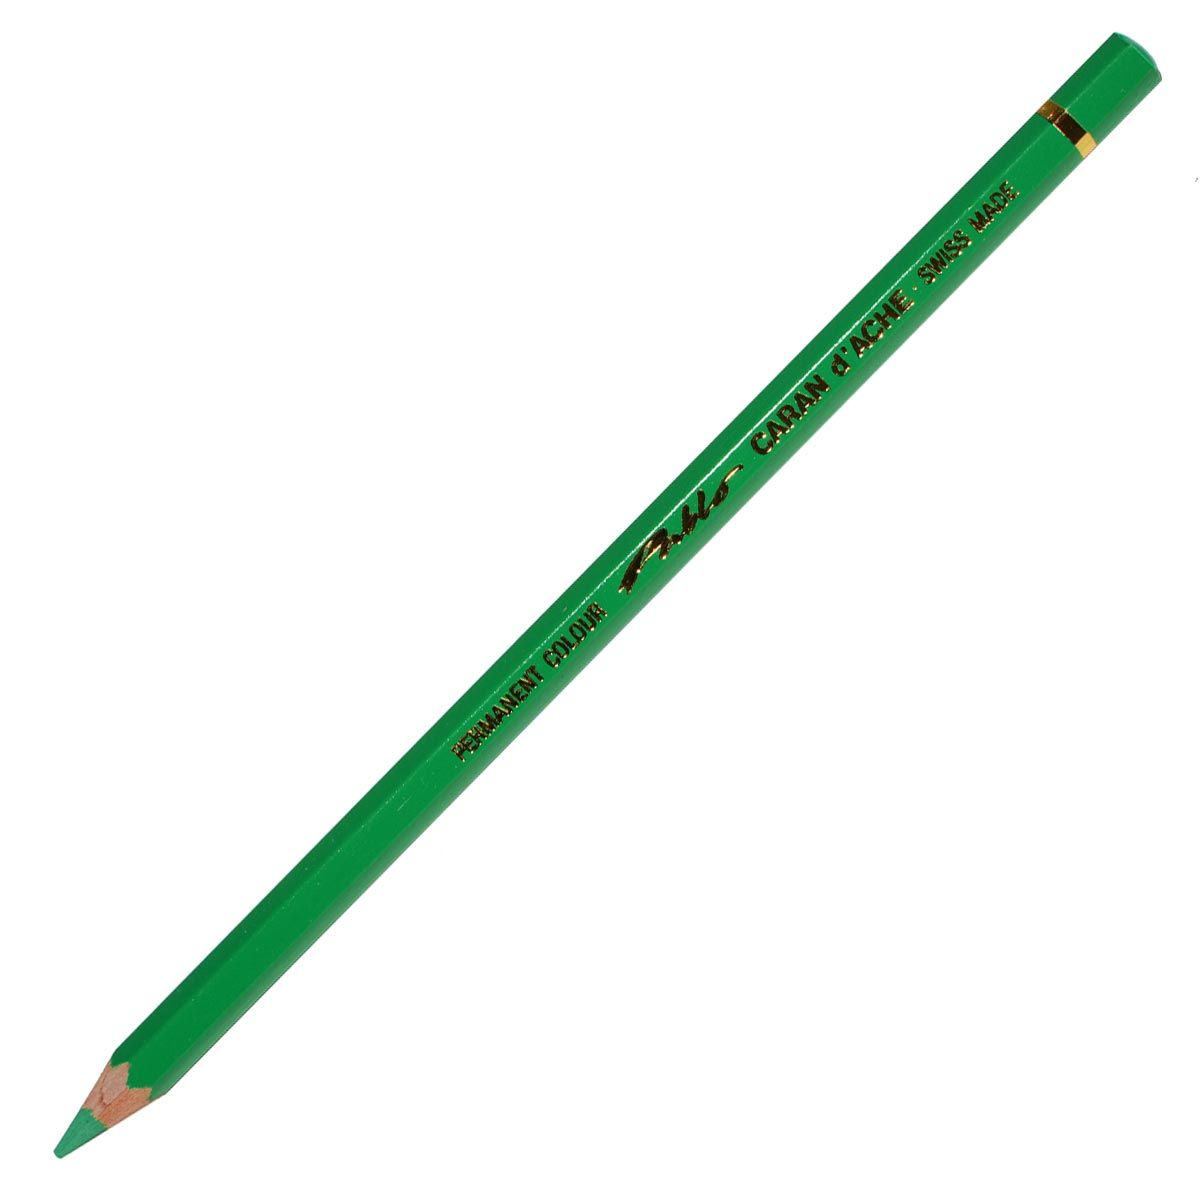 Caran d’Ache Pablo Coloured Pencil - Peacock Green 460